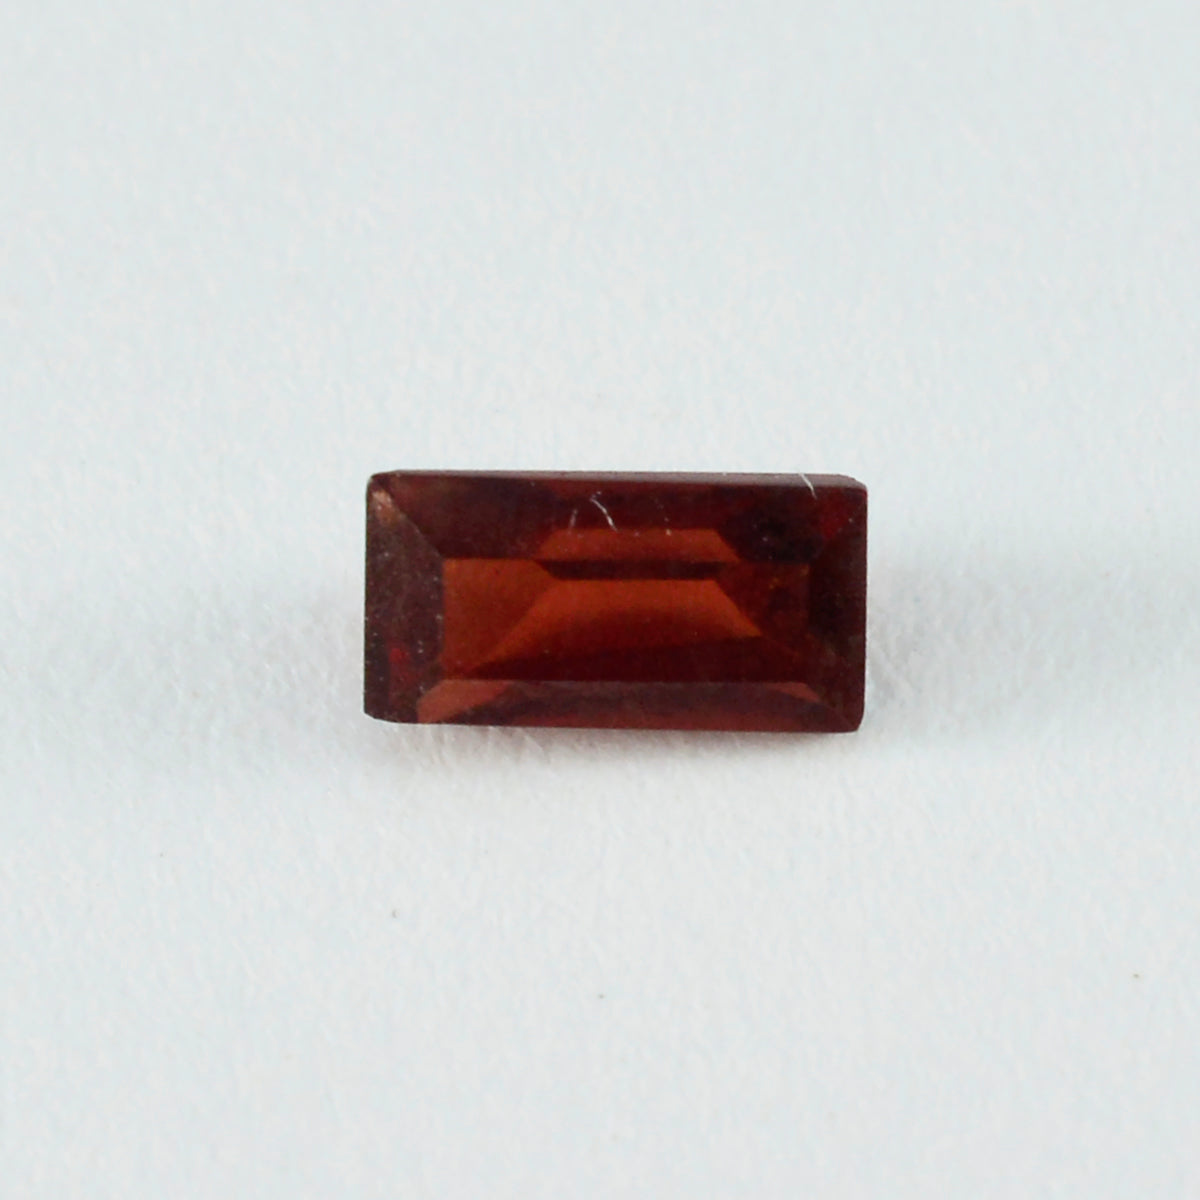 riyogems 1pc ナチュラル レッド ガーネット ファセット 8x16 mm バゲット形状 aa 品質の宝石